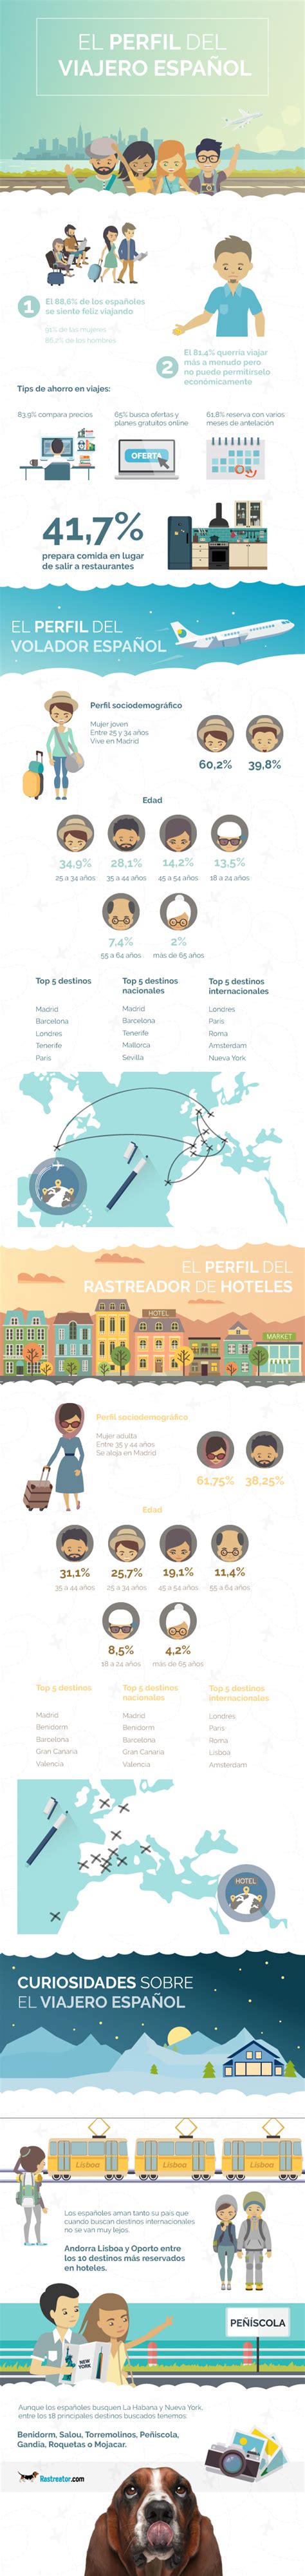 El Perfil Del Emprendedor Espanol Infografia Infographic Images My